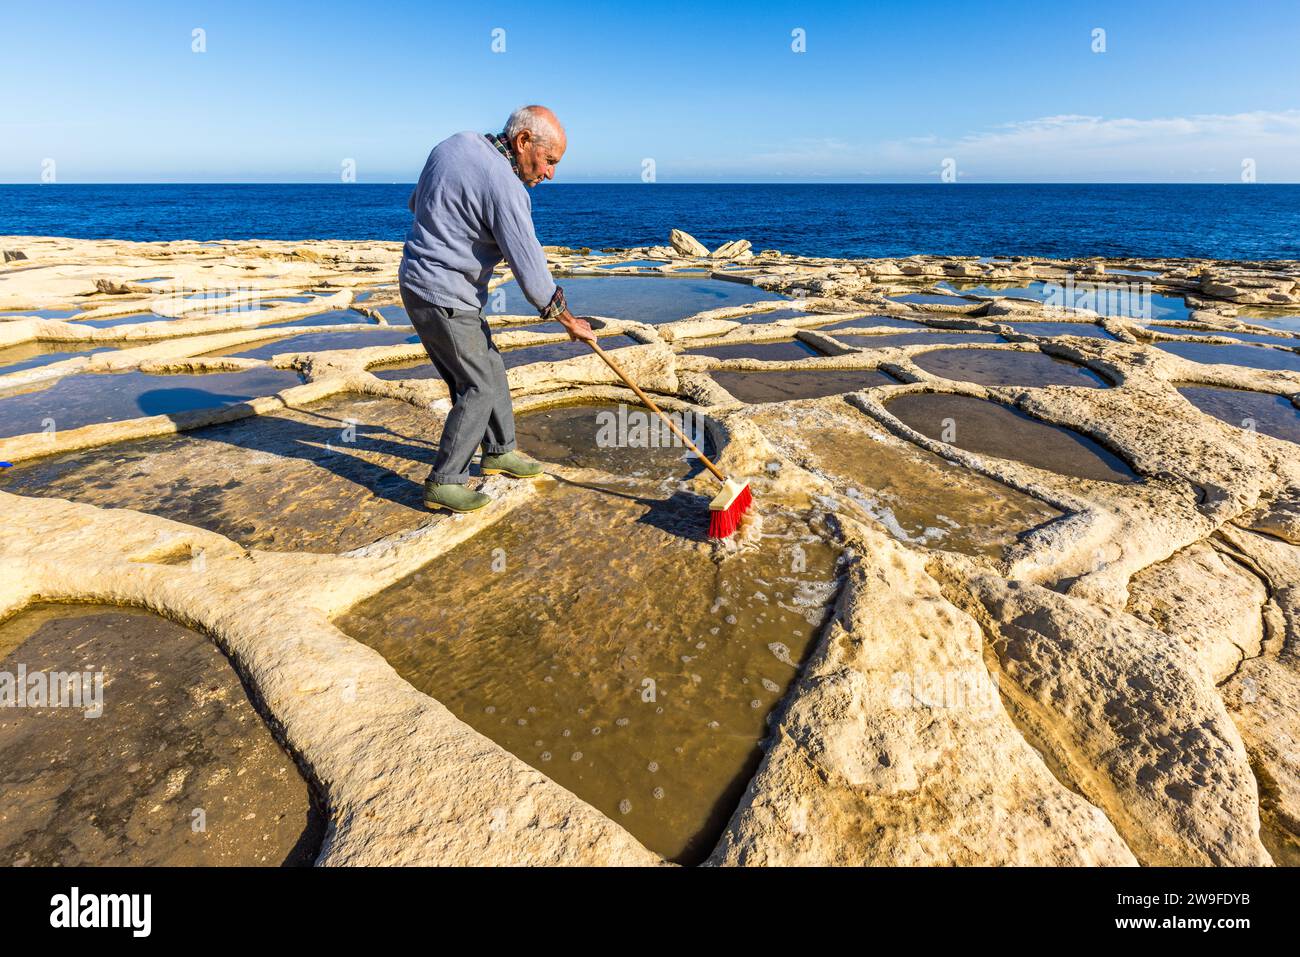 Żaren Darmanin, produttore di sale a Malta, dimostra la raccolta del sale nelle sue saline a Marsaskala. La raccolta avviene nei mesi caldi tra maggio e settembre. Saline di Darmanin vicino a Marsascala, Malta Foto Stock